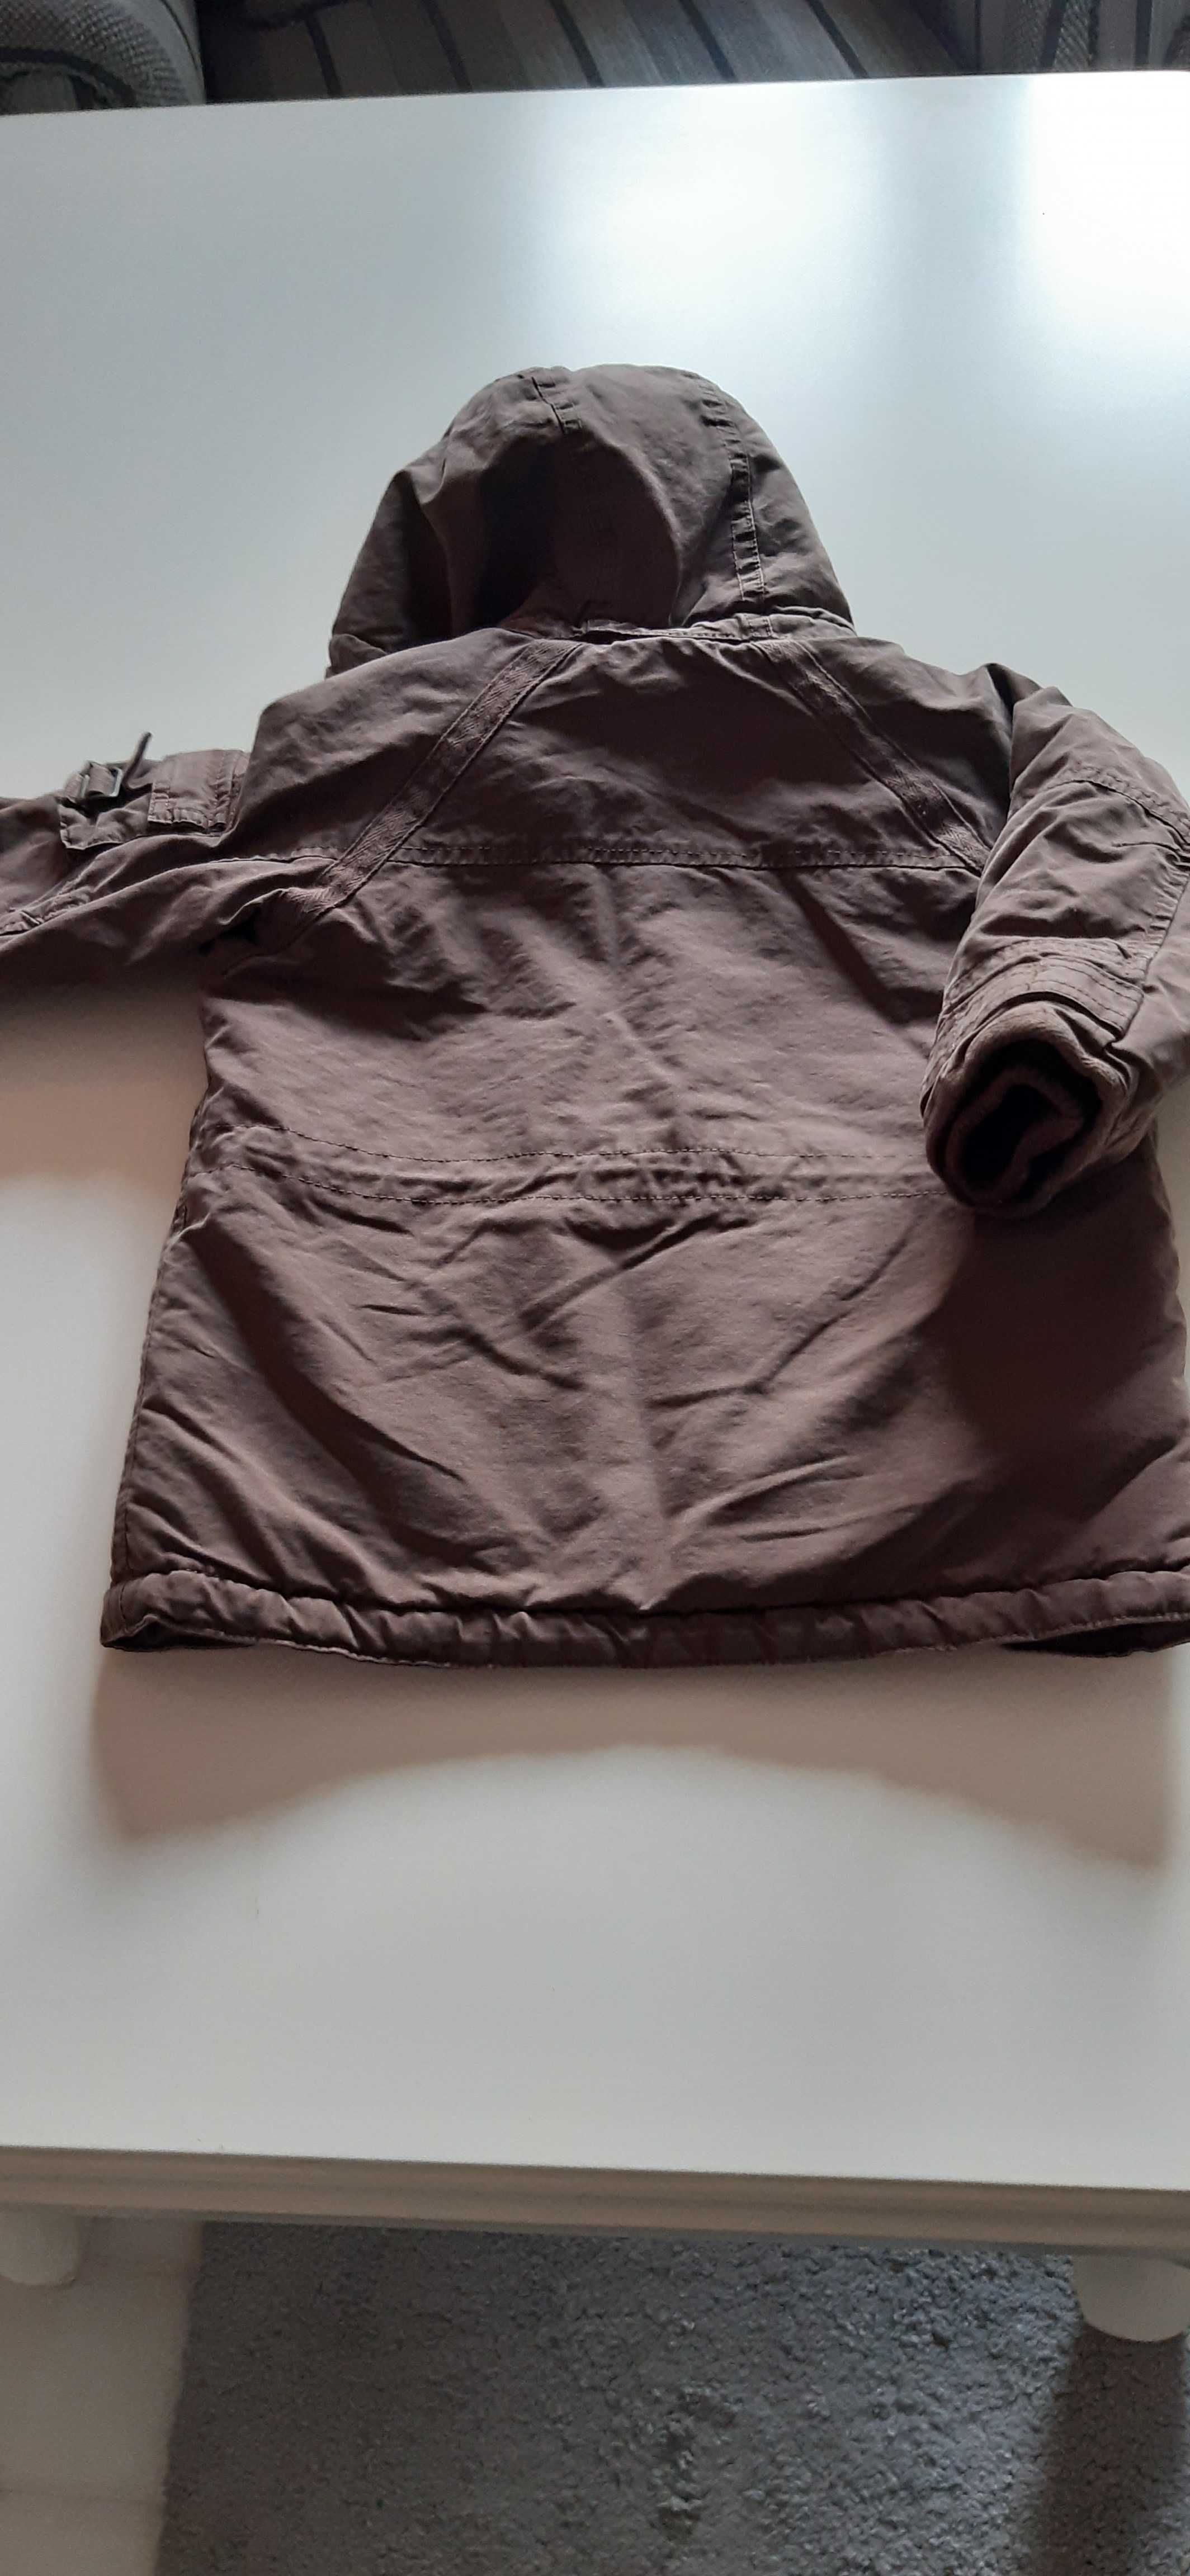 Kurteczka ocieplana roz. 80 H&M bawełniana kurtka ciepła